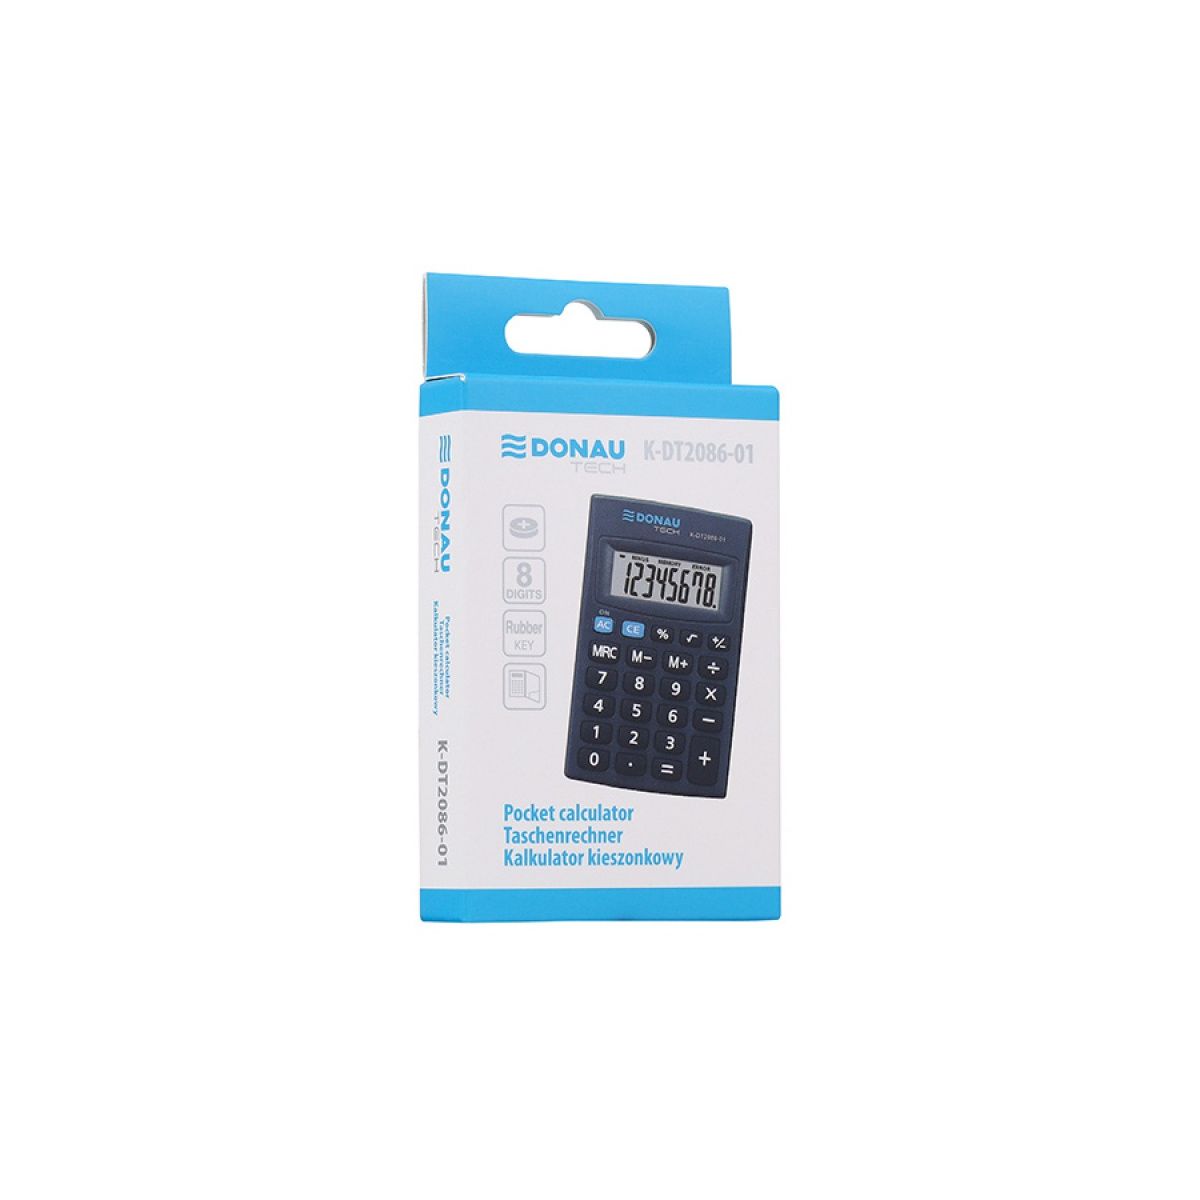 Kalkulator kieszonkowy Donau Tech (K-DT2086-01)